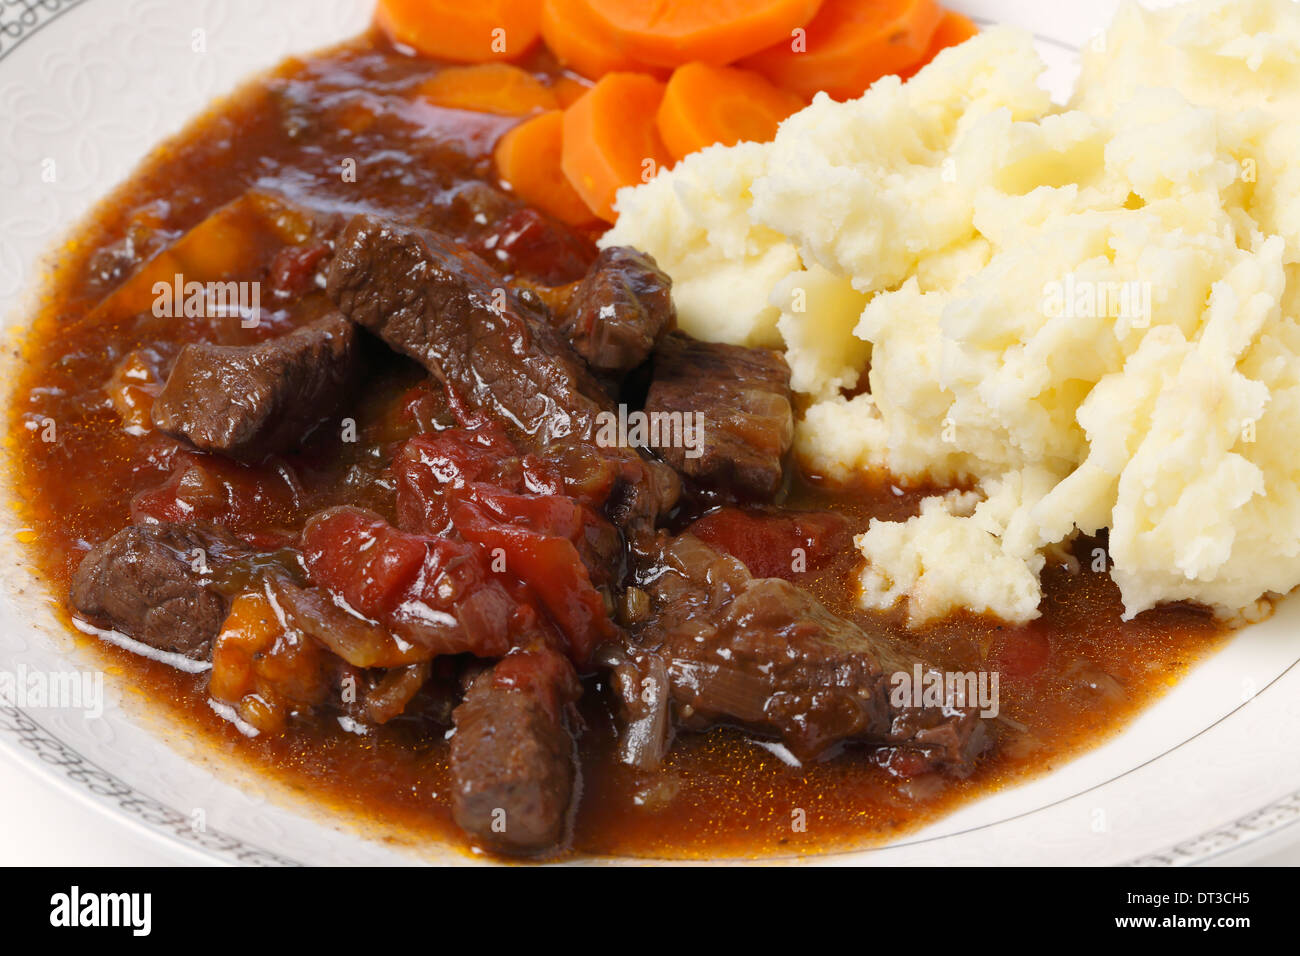 La carne bovina britannica e pomodoro casseruola, servita con purè di patate e carote bollite, primo piano Foto Stock